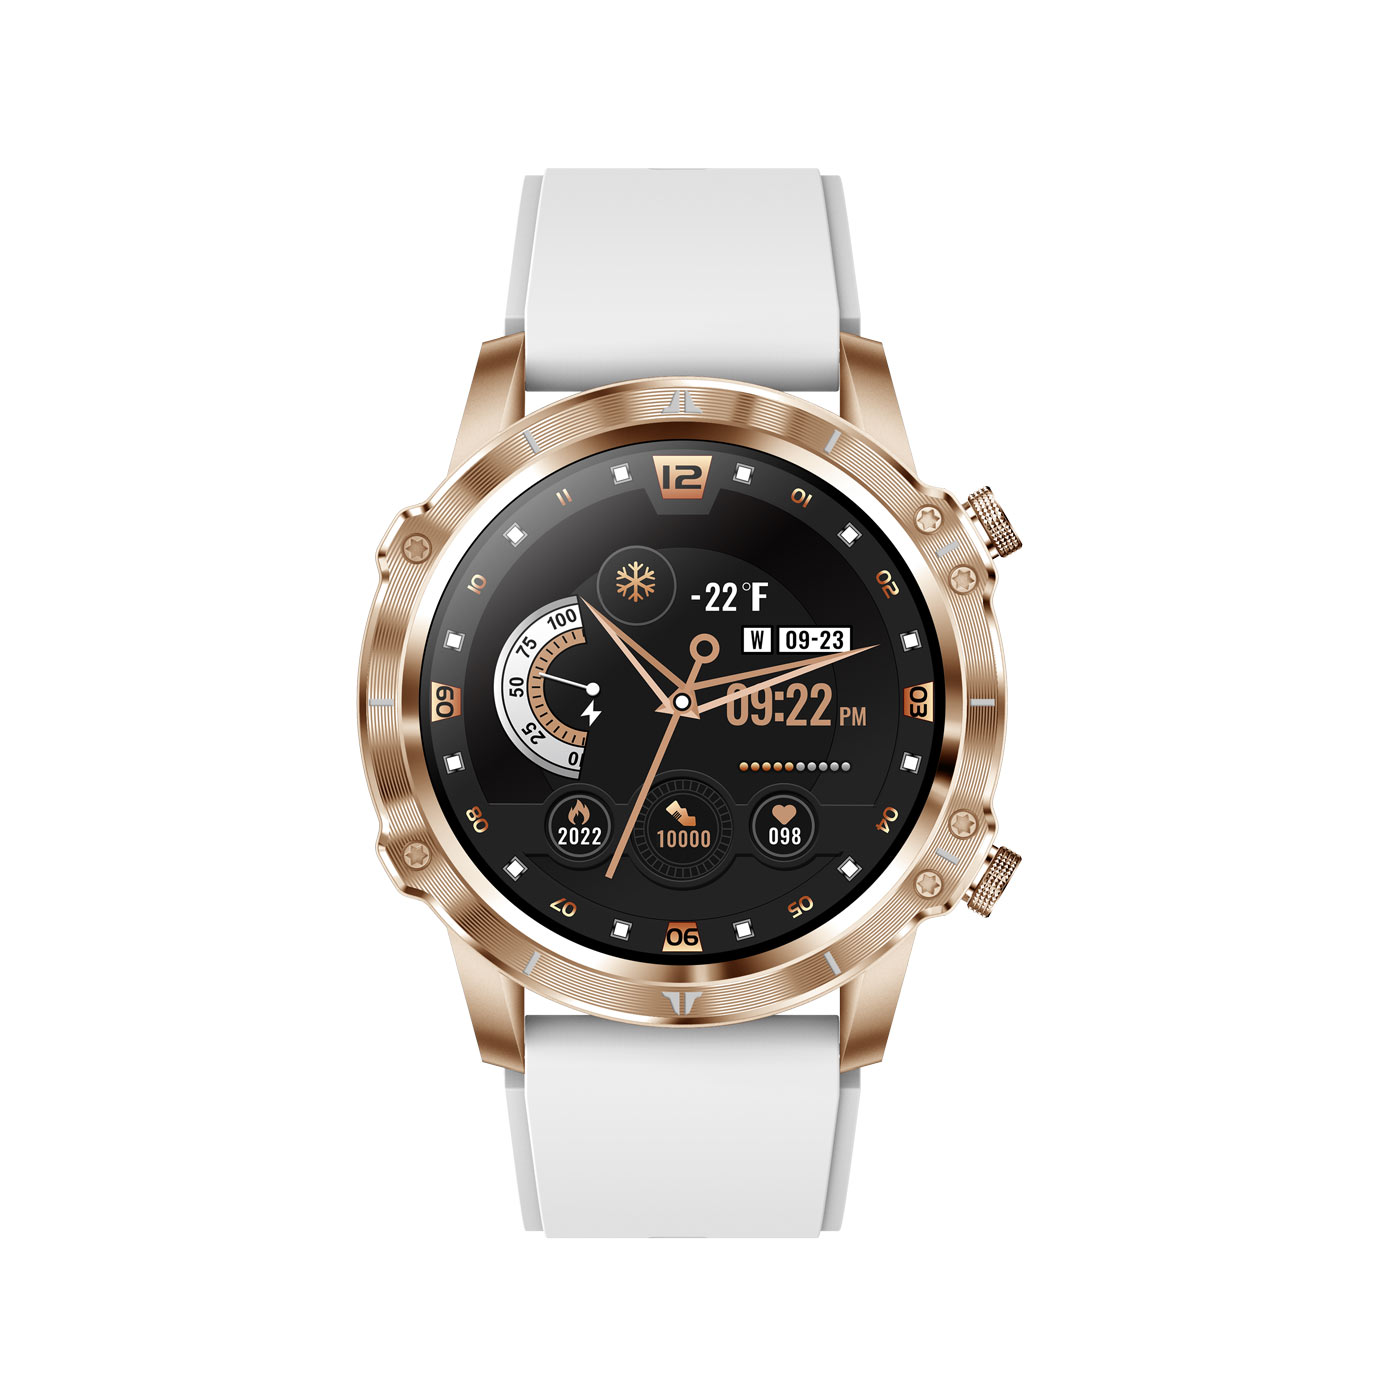 CARNEO Adventure HR+ Smartwatch, gold gold